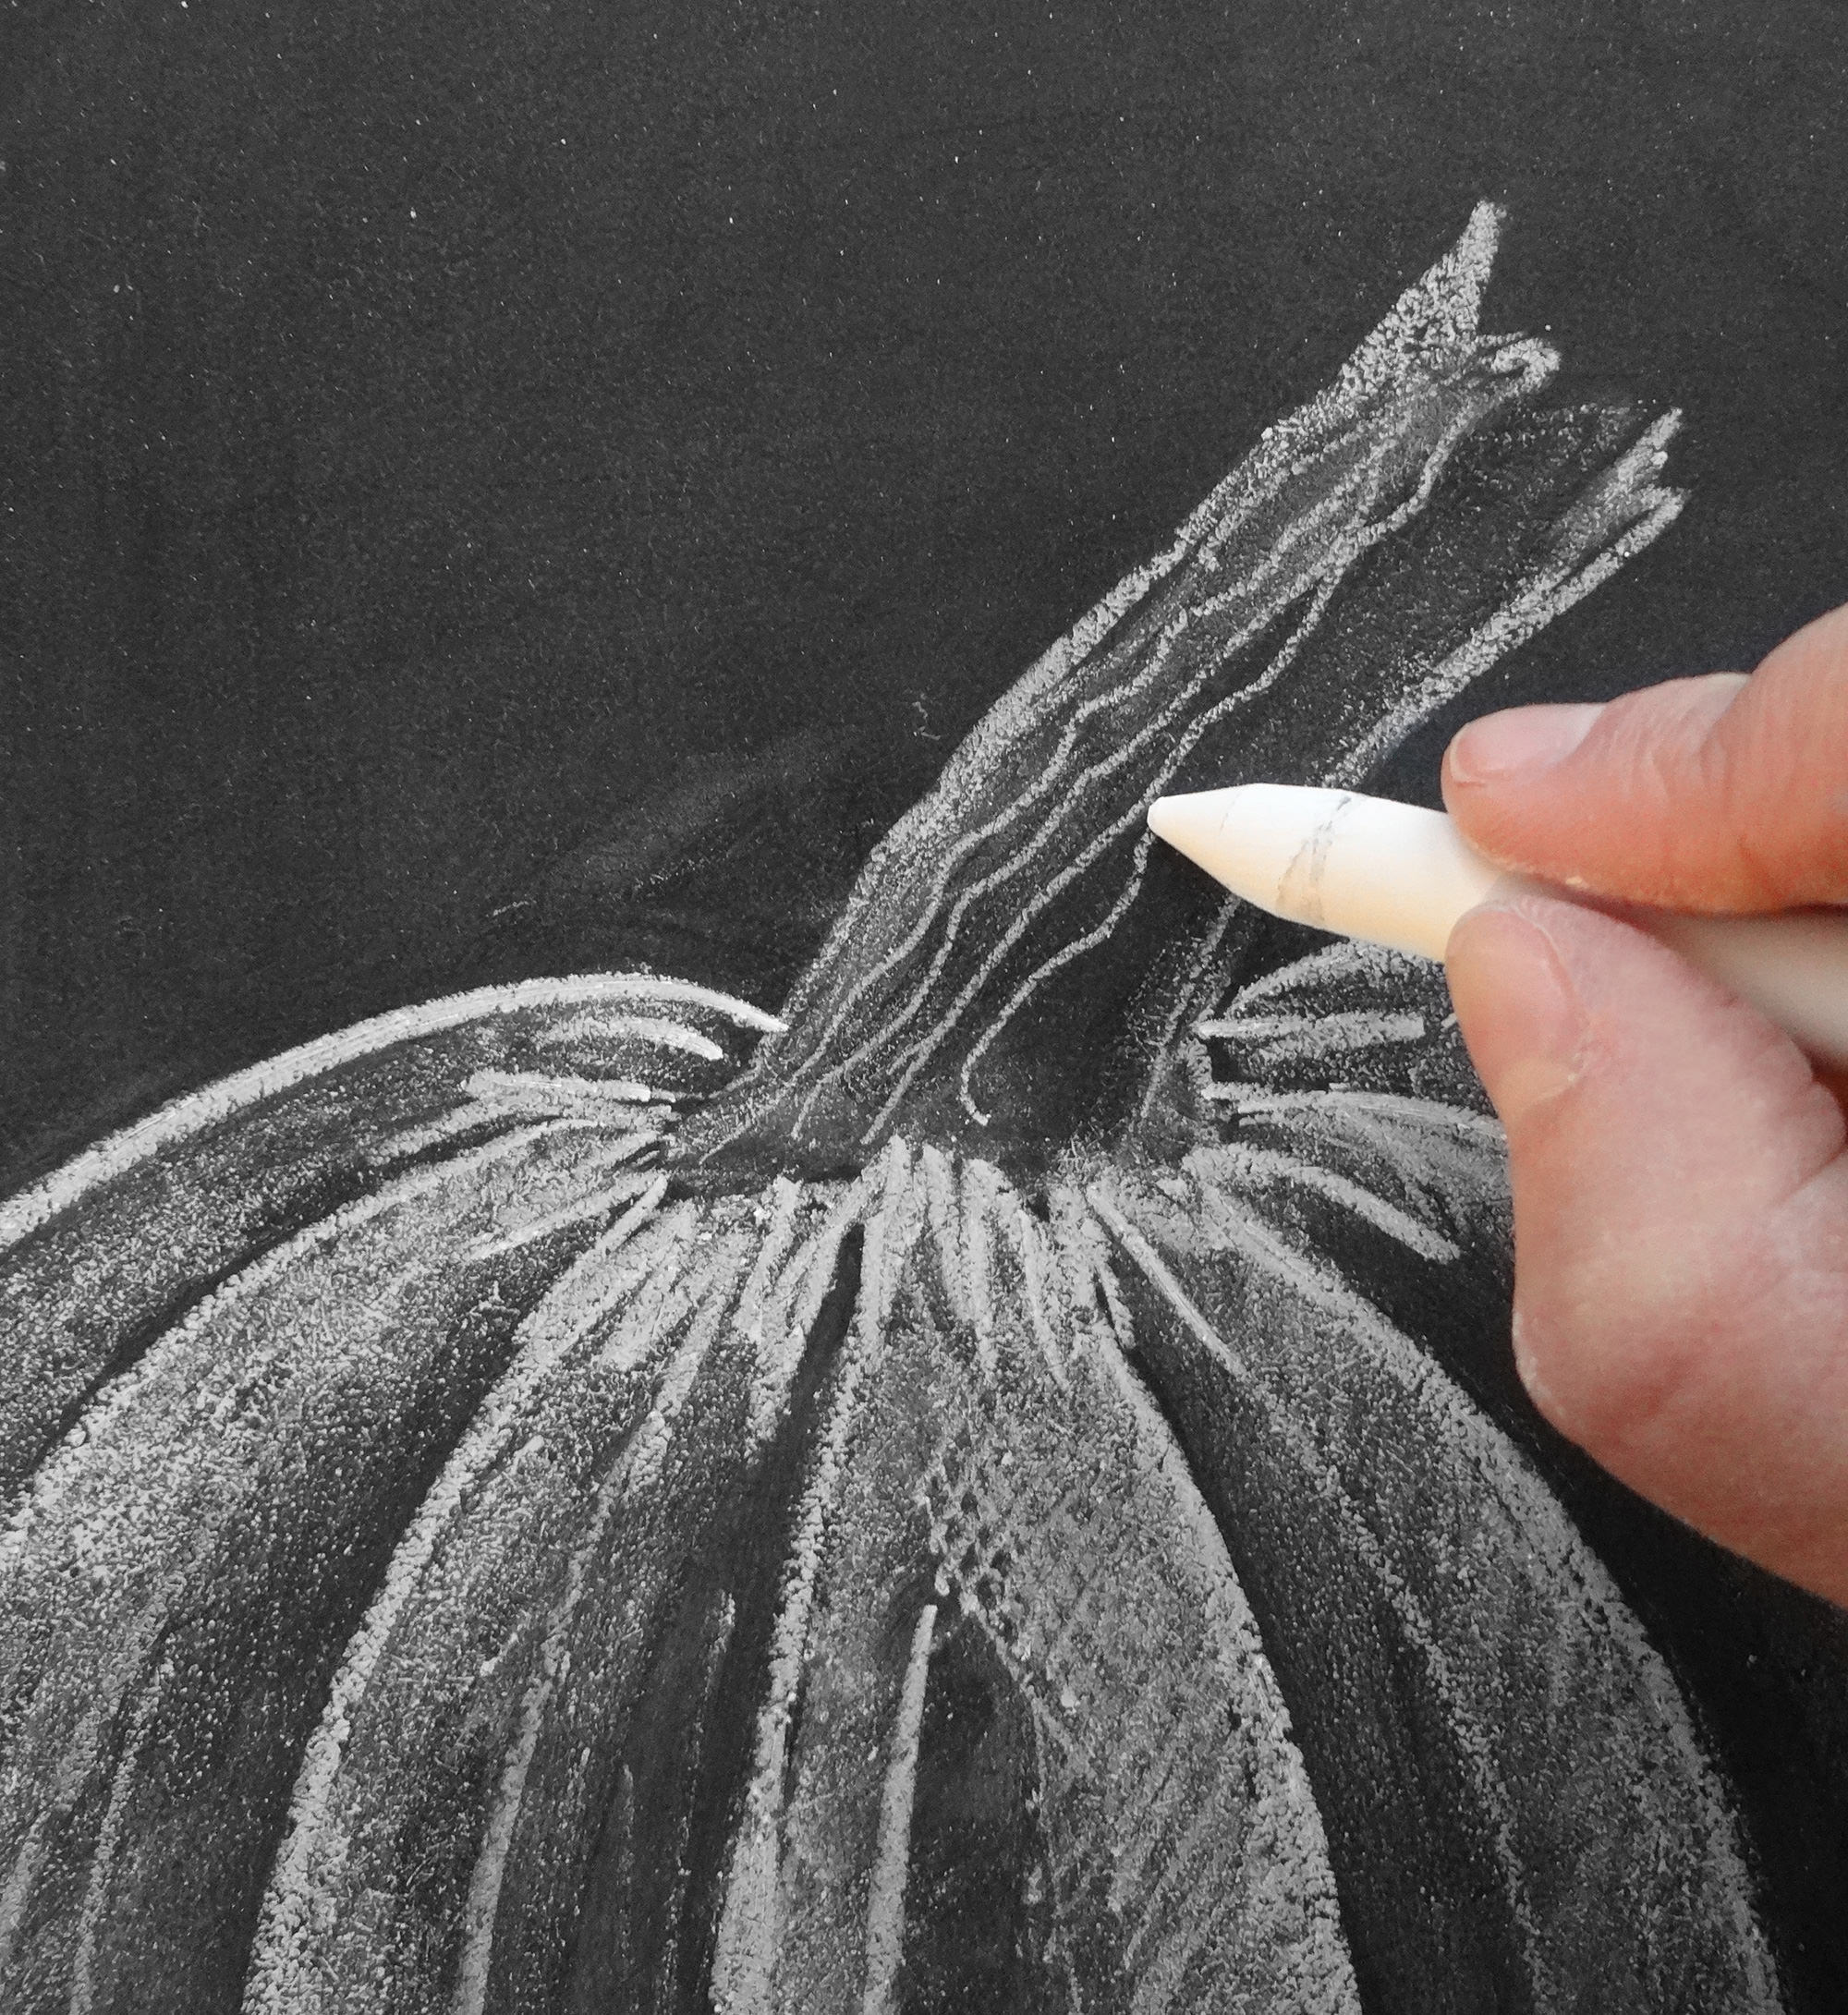  Valerie McKeehan, forfatter af The Complete Book of Chalk Lettering, giver en trinvis vejledning om, hvordan man tegner et kridtpumpkin.